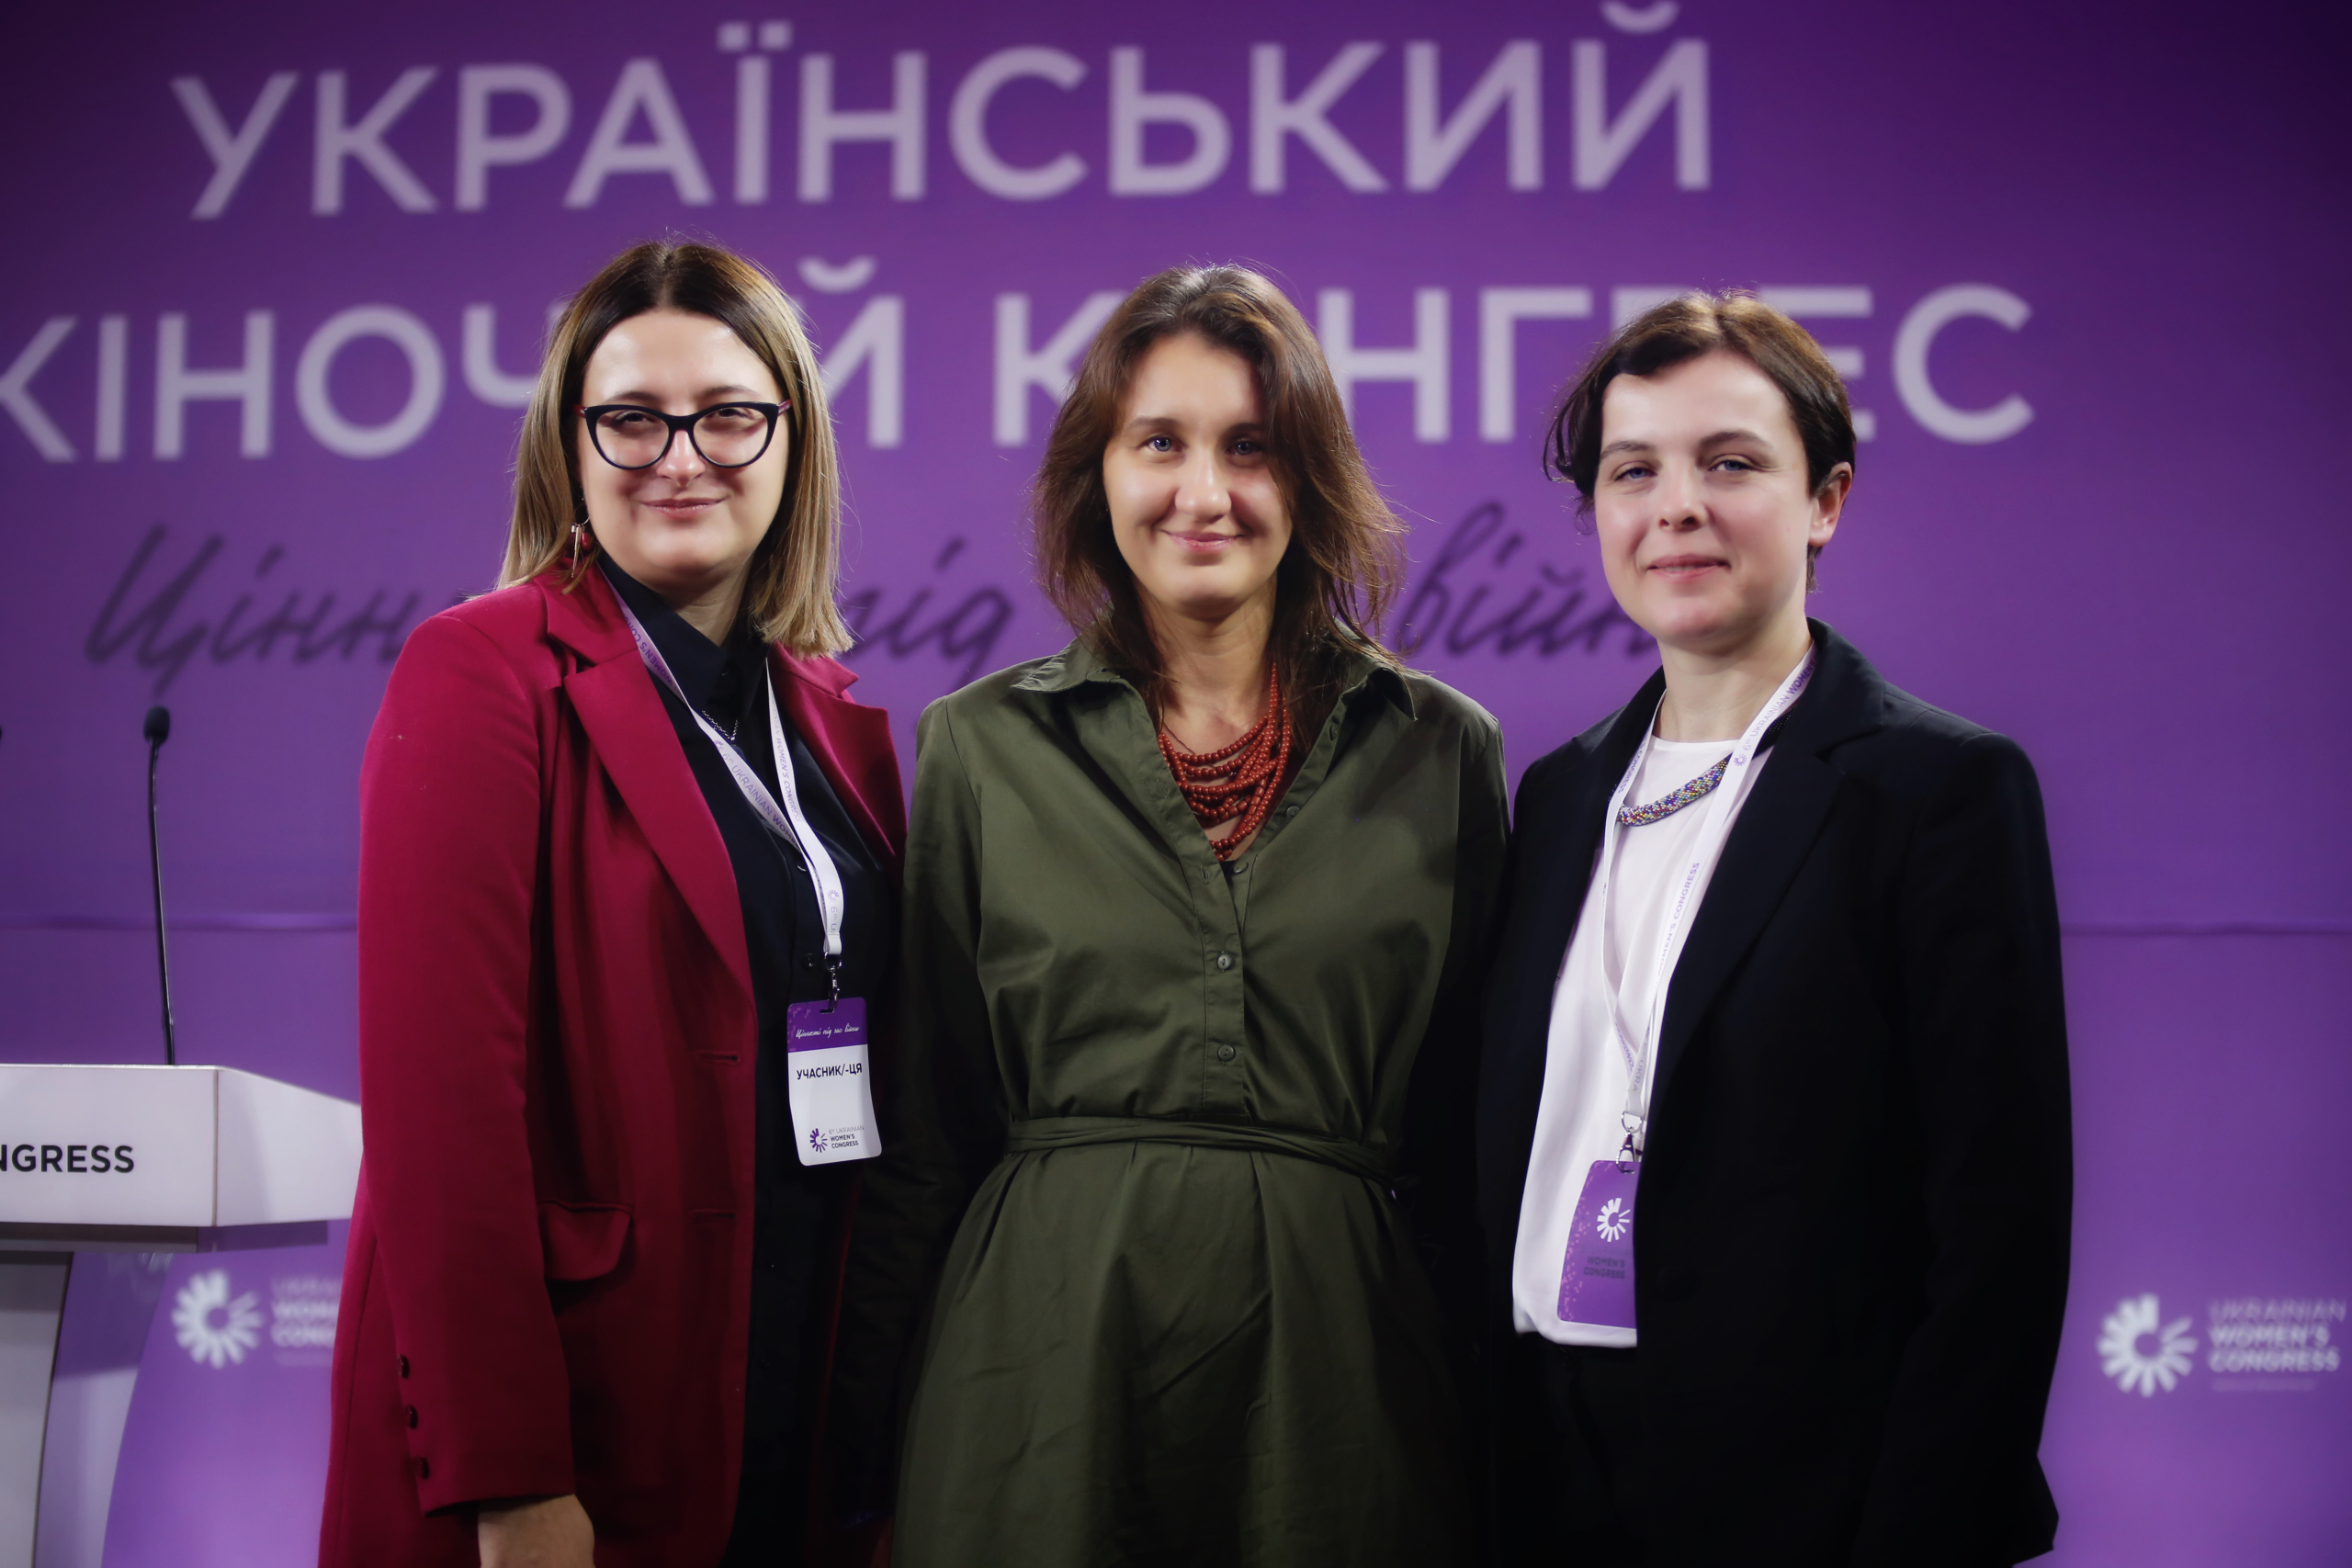 VI Український жіночий конгрес у Києві на тему «Цінності під час війни»